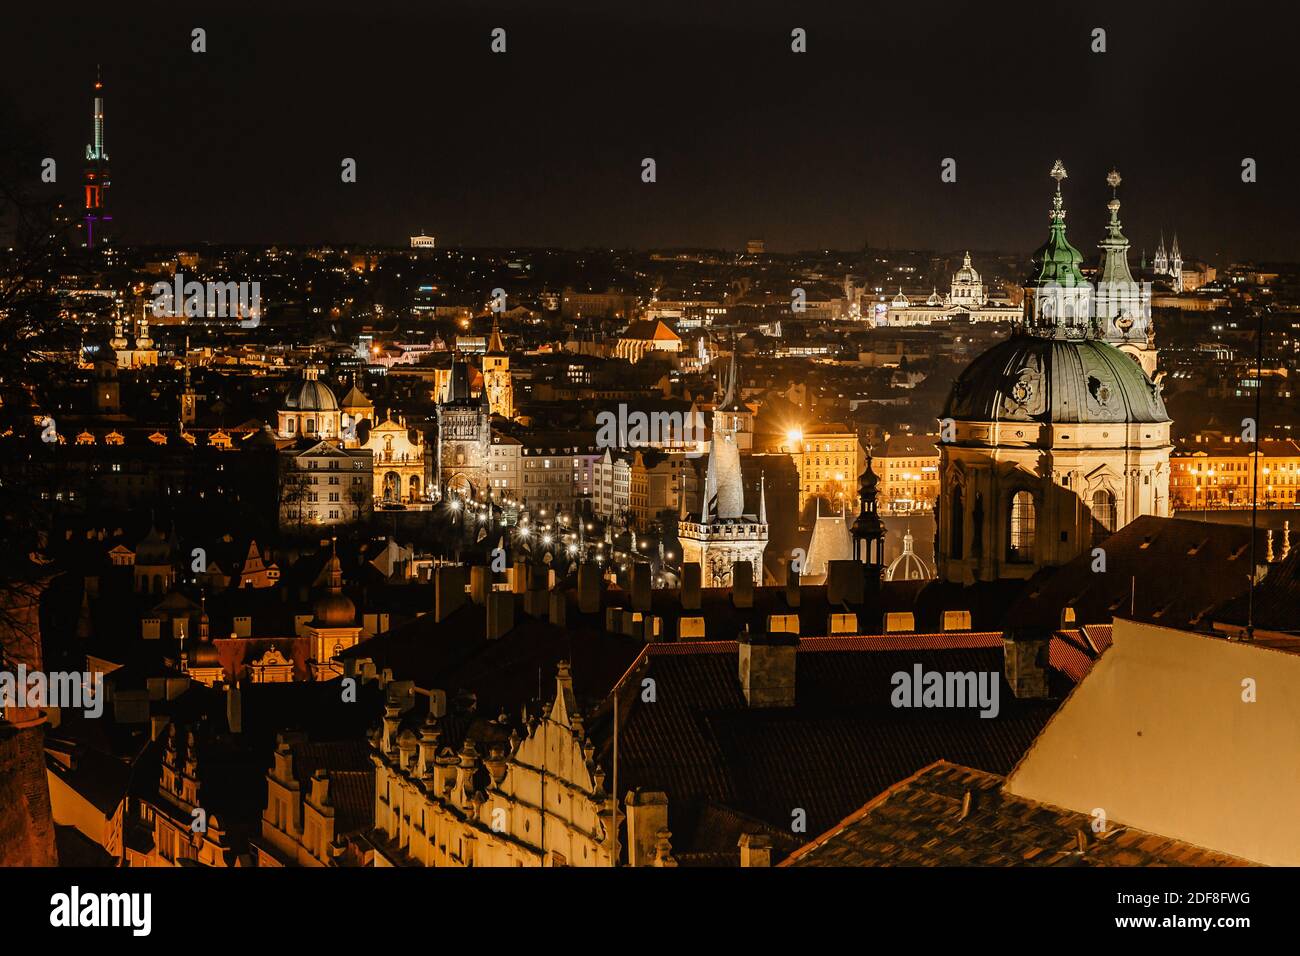 Nachtansicht der Altstadt mit historischen Gebäuden, Kirchen, Türmen in Prag, Tschechien republik.Prag Abendpanorama.erstaunliche europäische Stadtlandschaft.Nacht Stockfoto